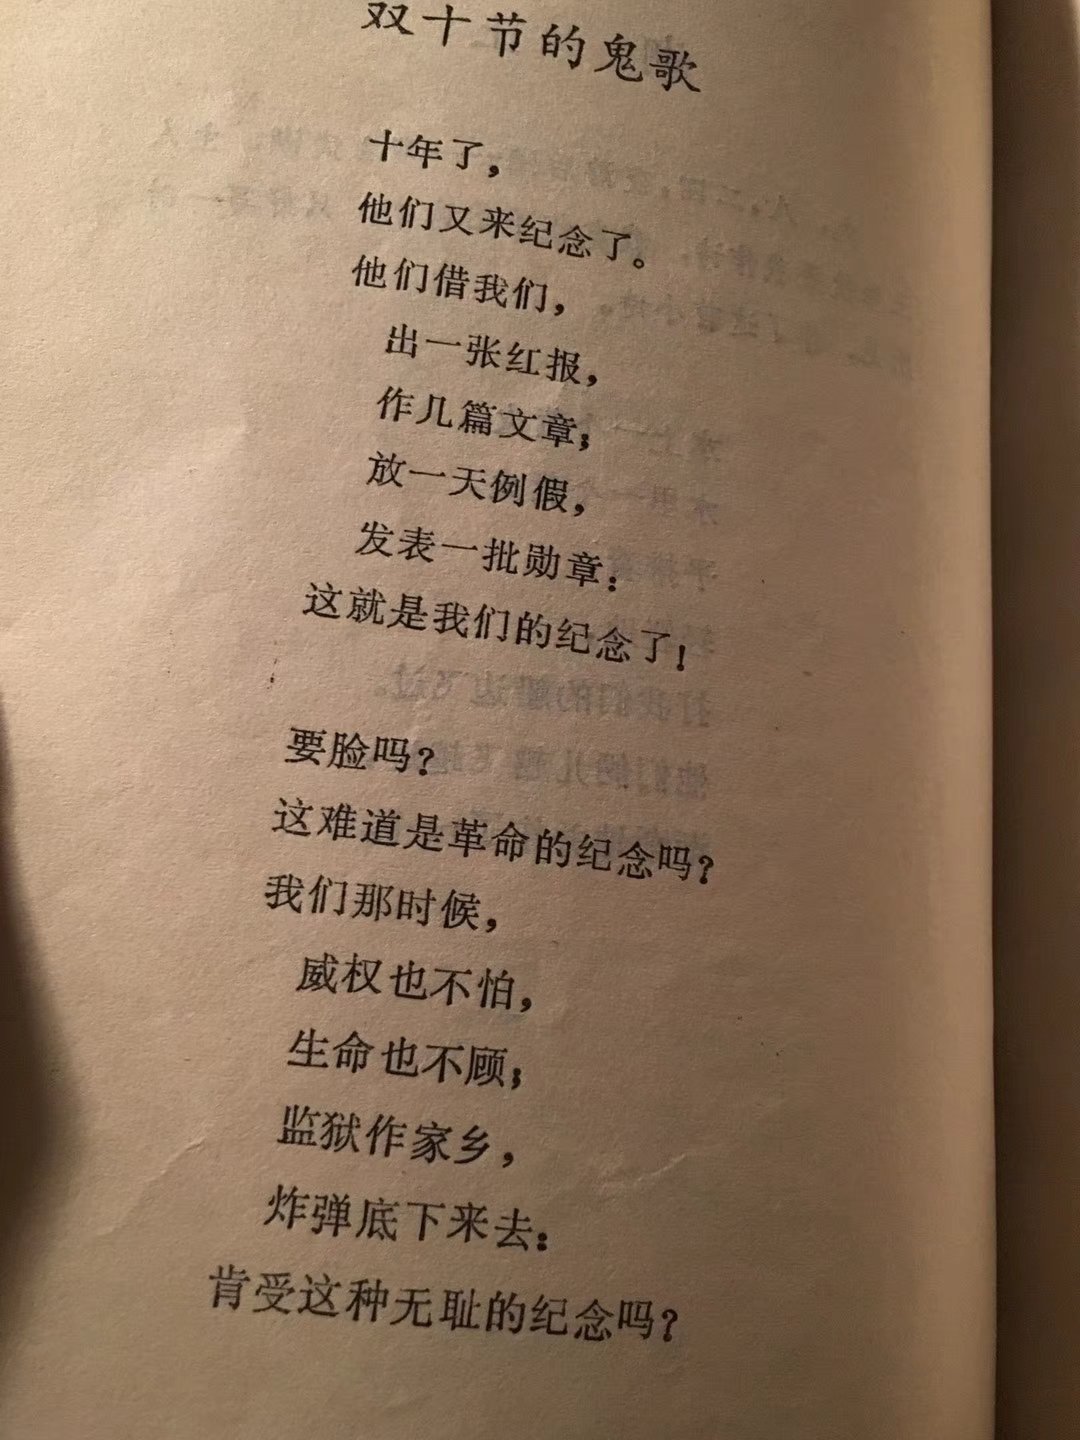 一，从楚辞开始，中国文学史上才有了有名有姓的作者，有了第一位诗人、文学家，就是屈原，《诗经》虽然也有有名有姓的作者，但个人色彩不突出，作者生平也知道的不多。从屈原开始，才有了这种“我手写我诗”，直抒胸臆的文学表达， 用一个现在很流行的学术概念说，就是中国“抒情传统”的开端。